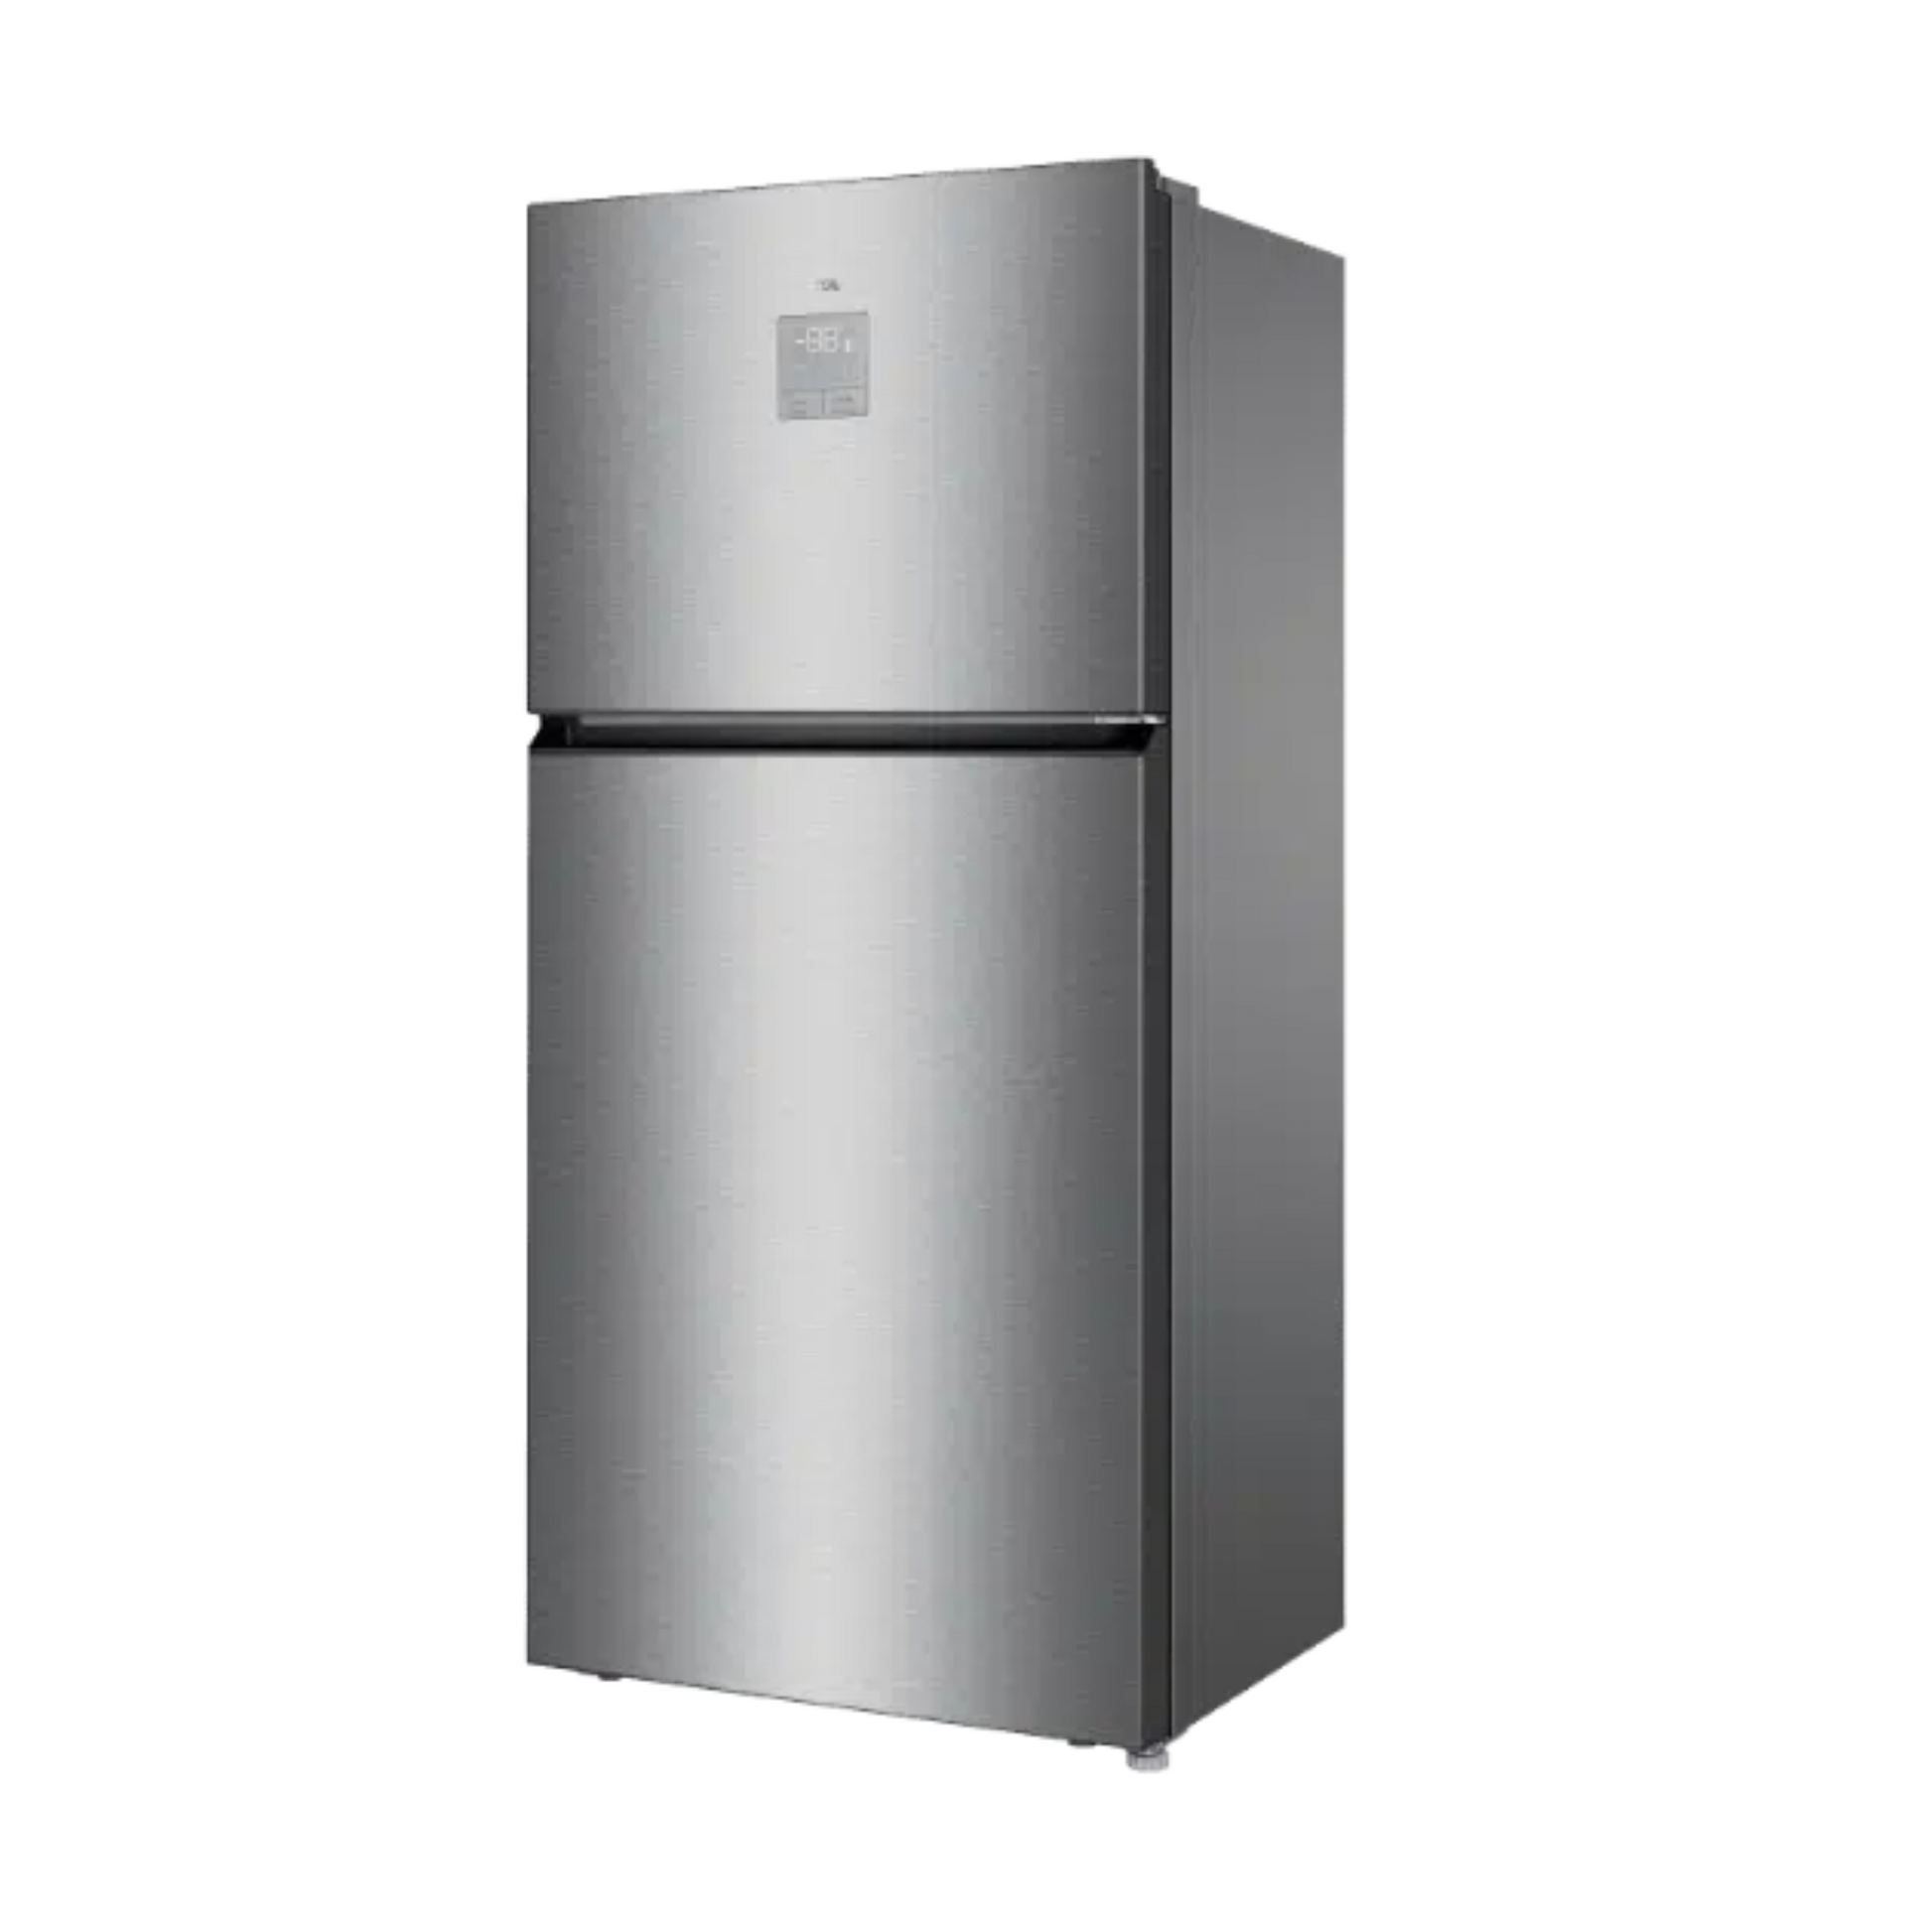 TCL 700L Double Door Refrigerator, P700TMN